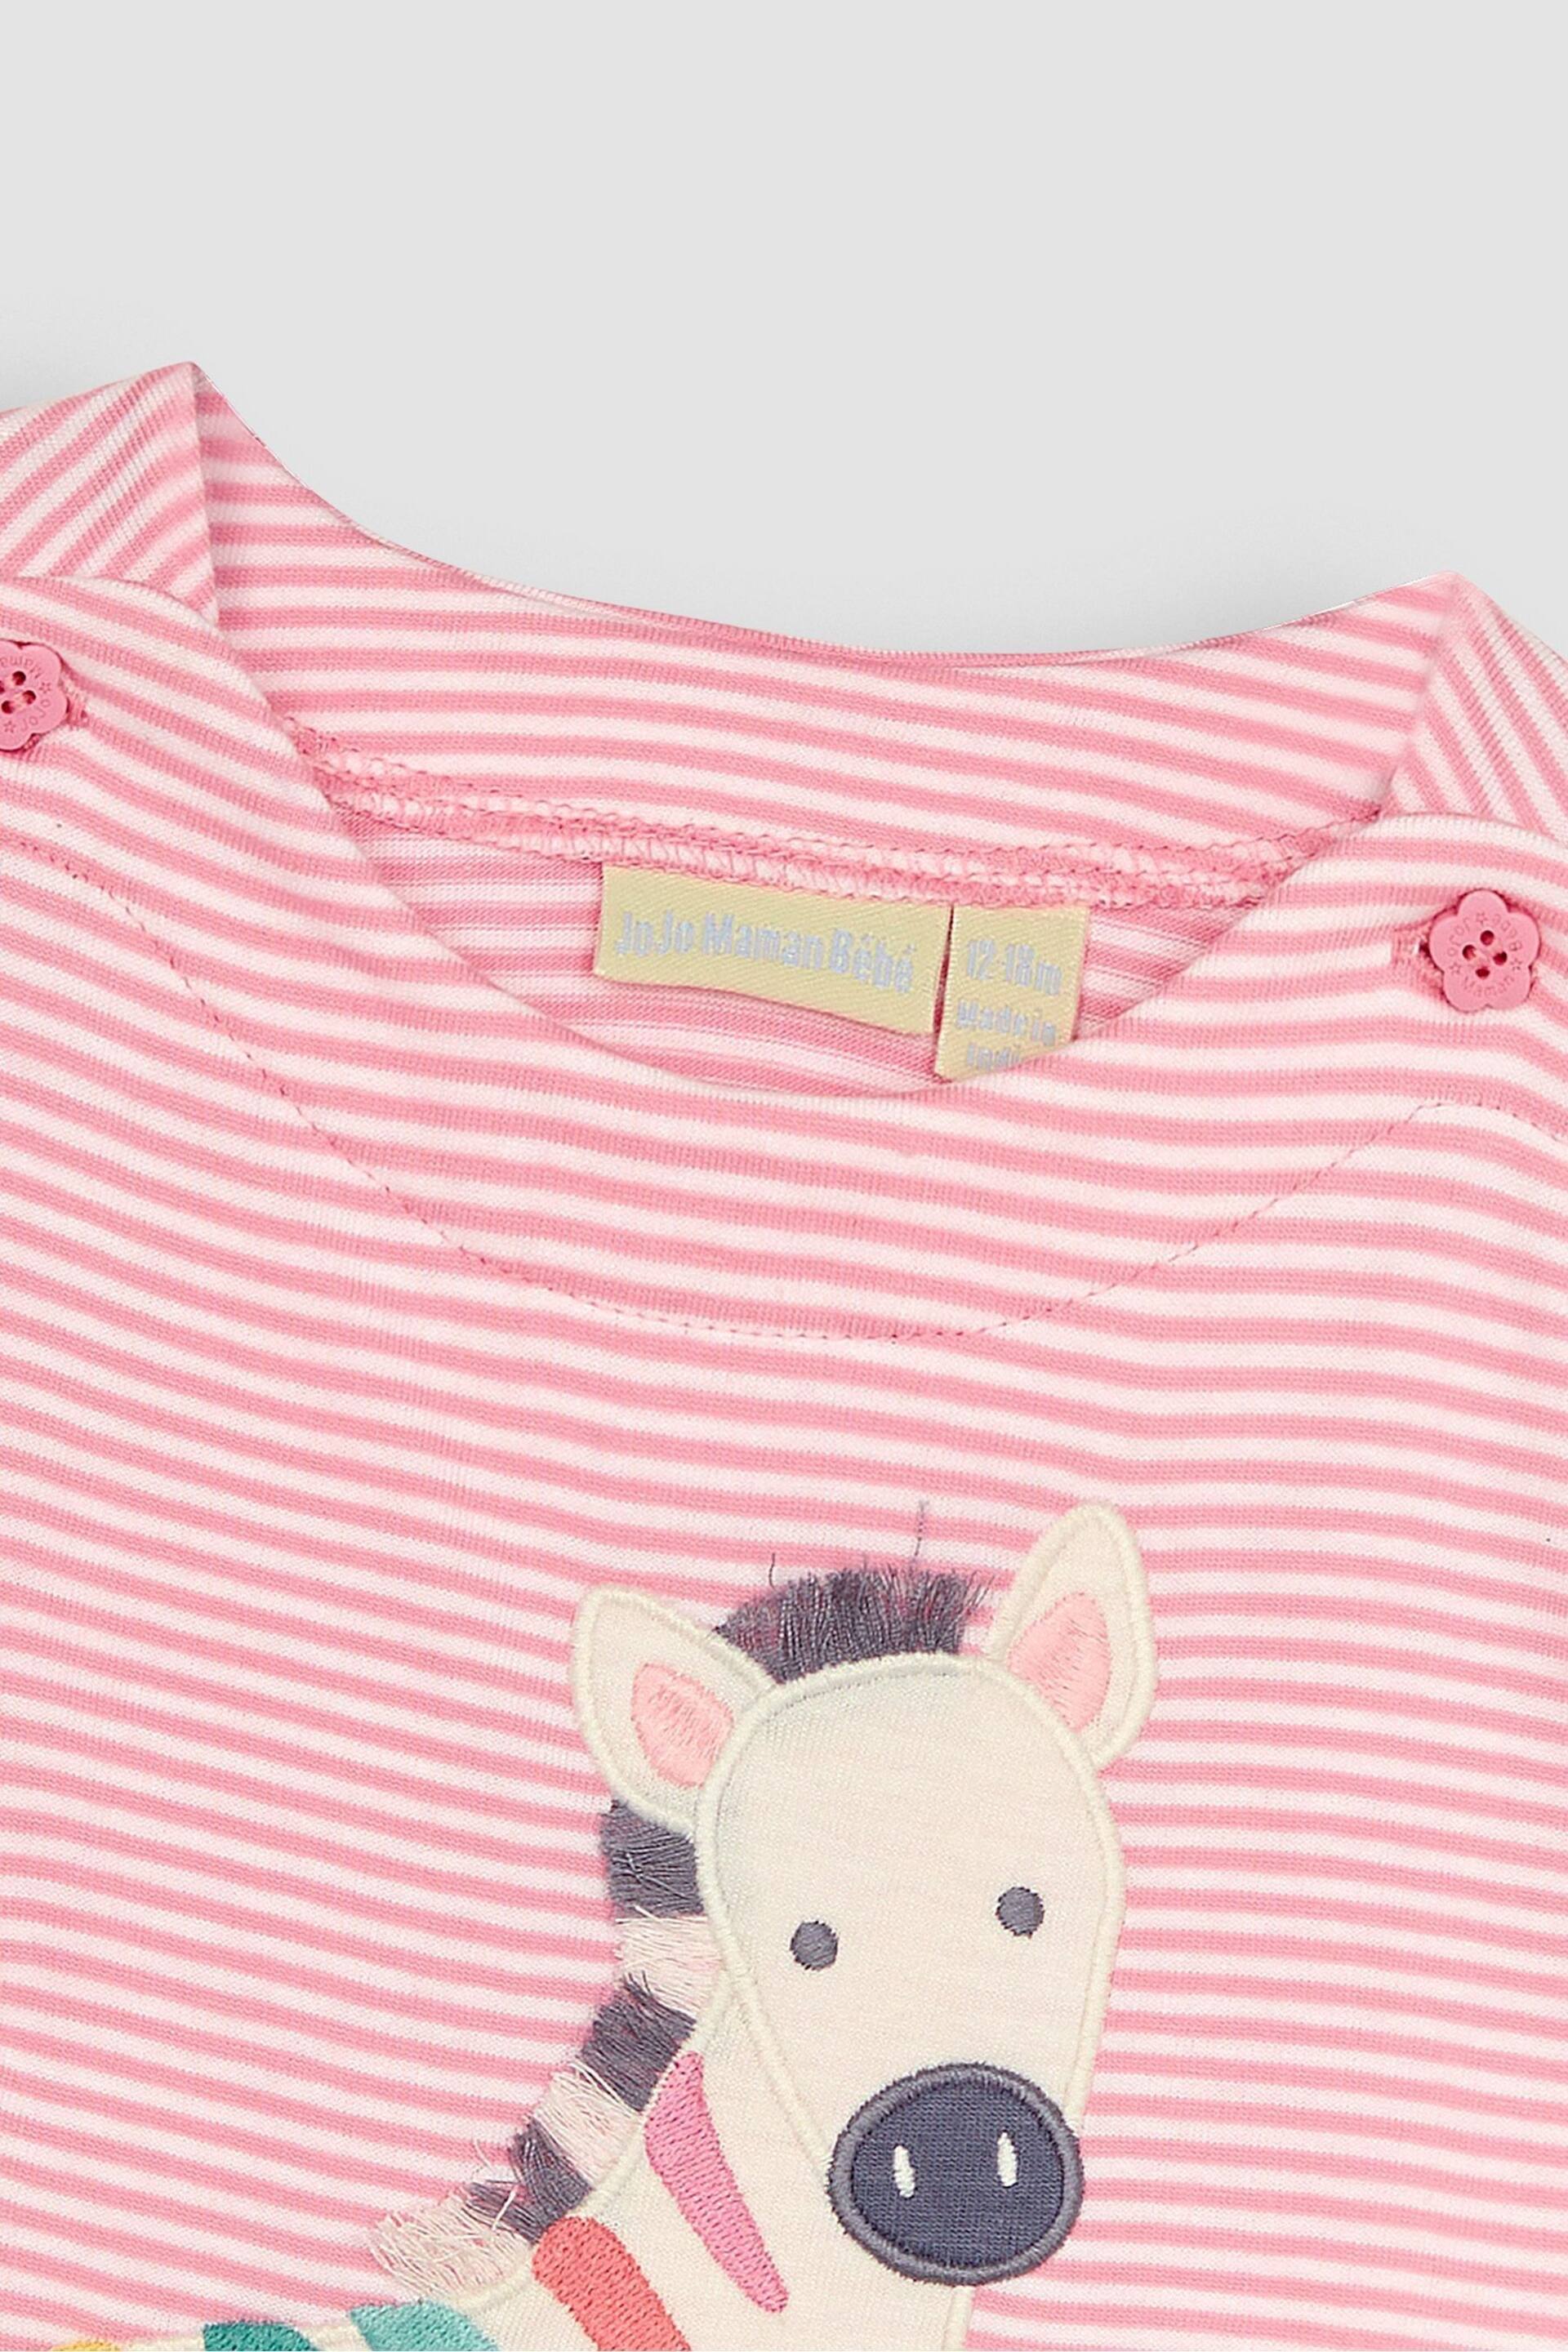 JoJo Maman Bébé Rose Pink Zebra Appliqué T-Shirt - Image 3 of 4